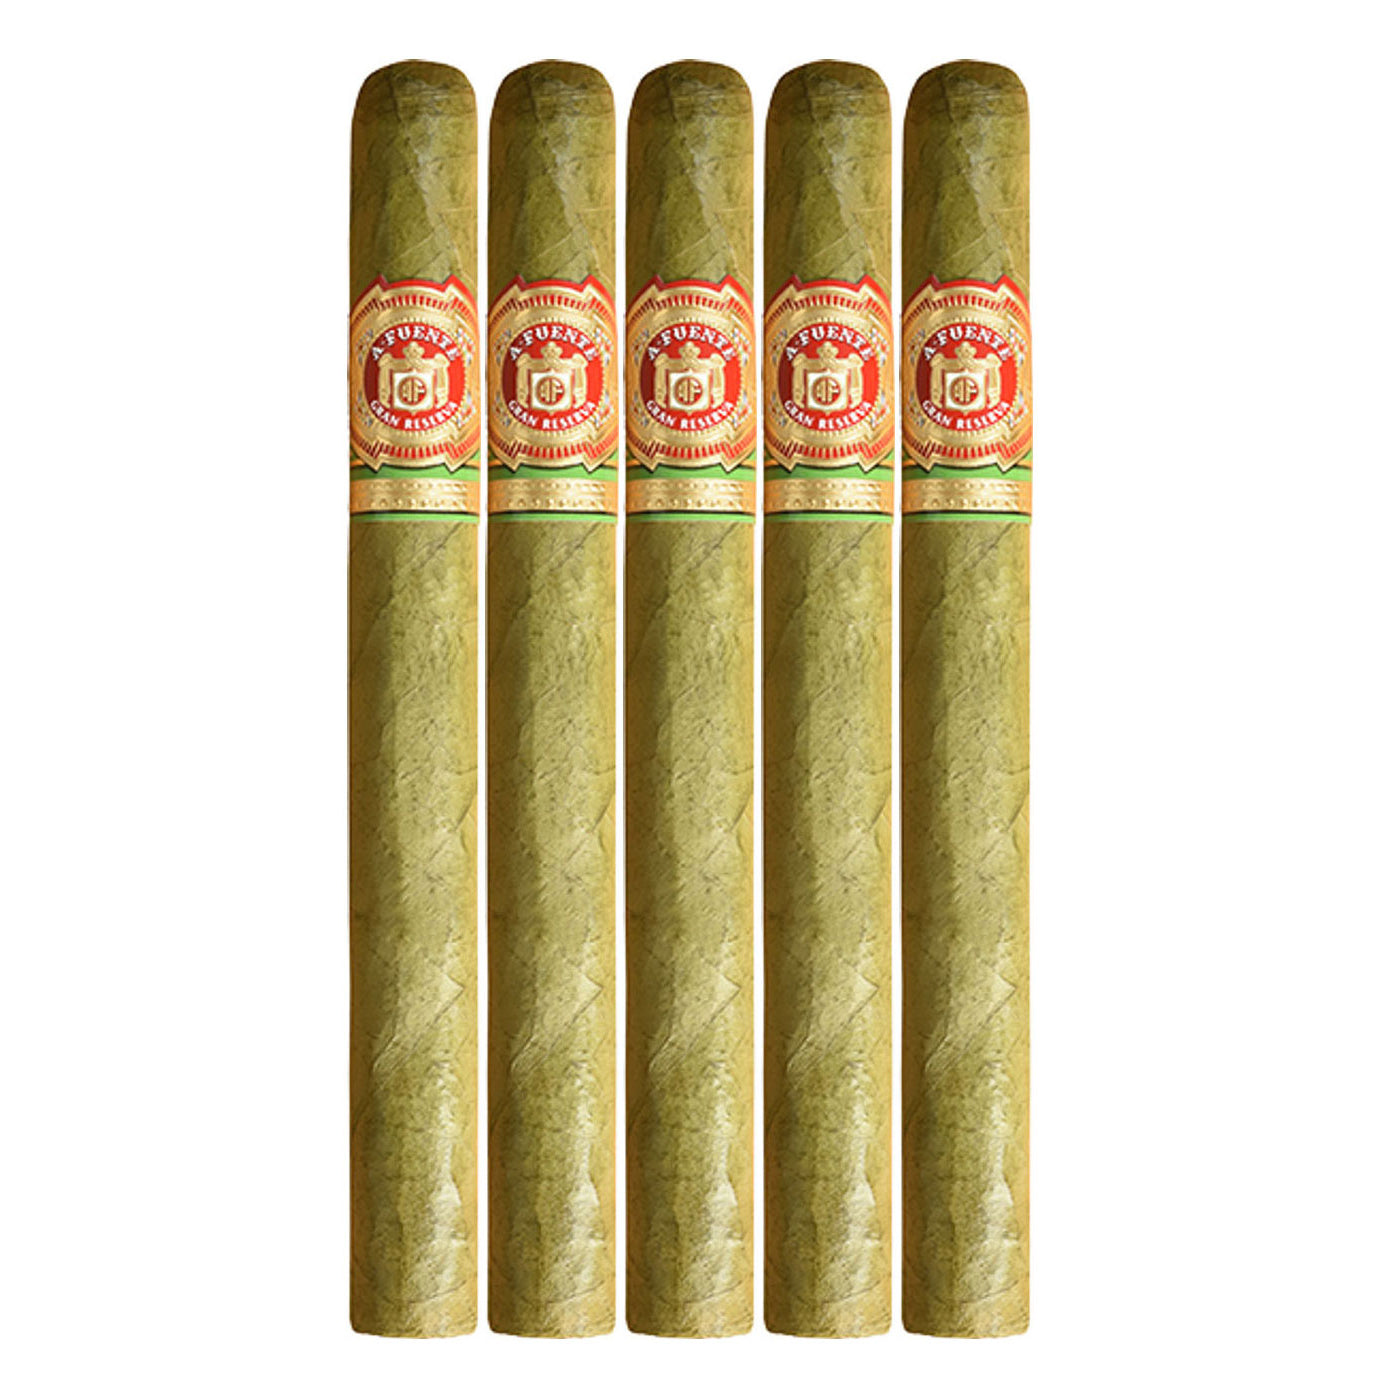 Arturo Fuente Seleccion Privada No.1 Claro 6 3/4 x 44 Cigars 5 Pack